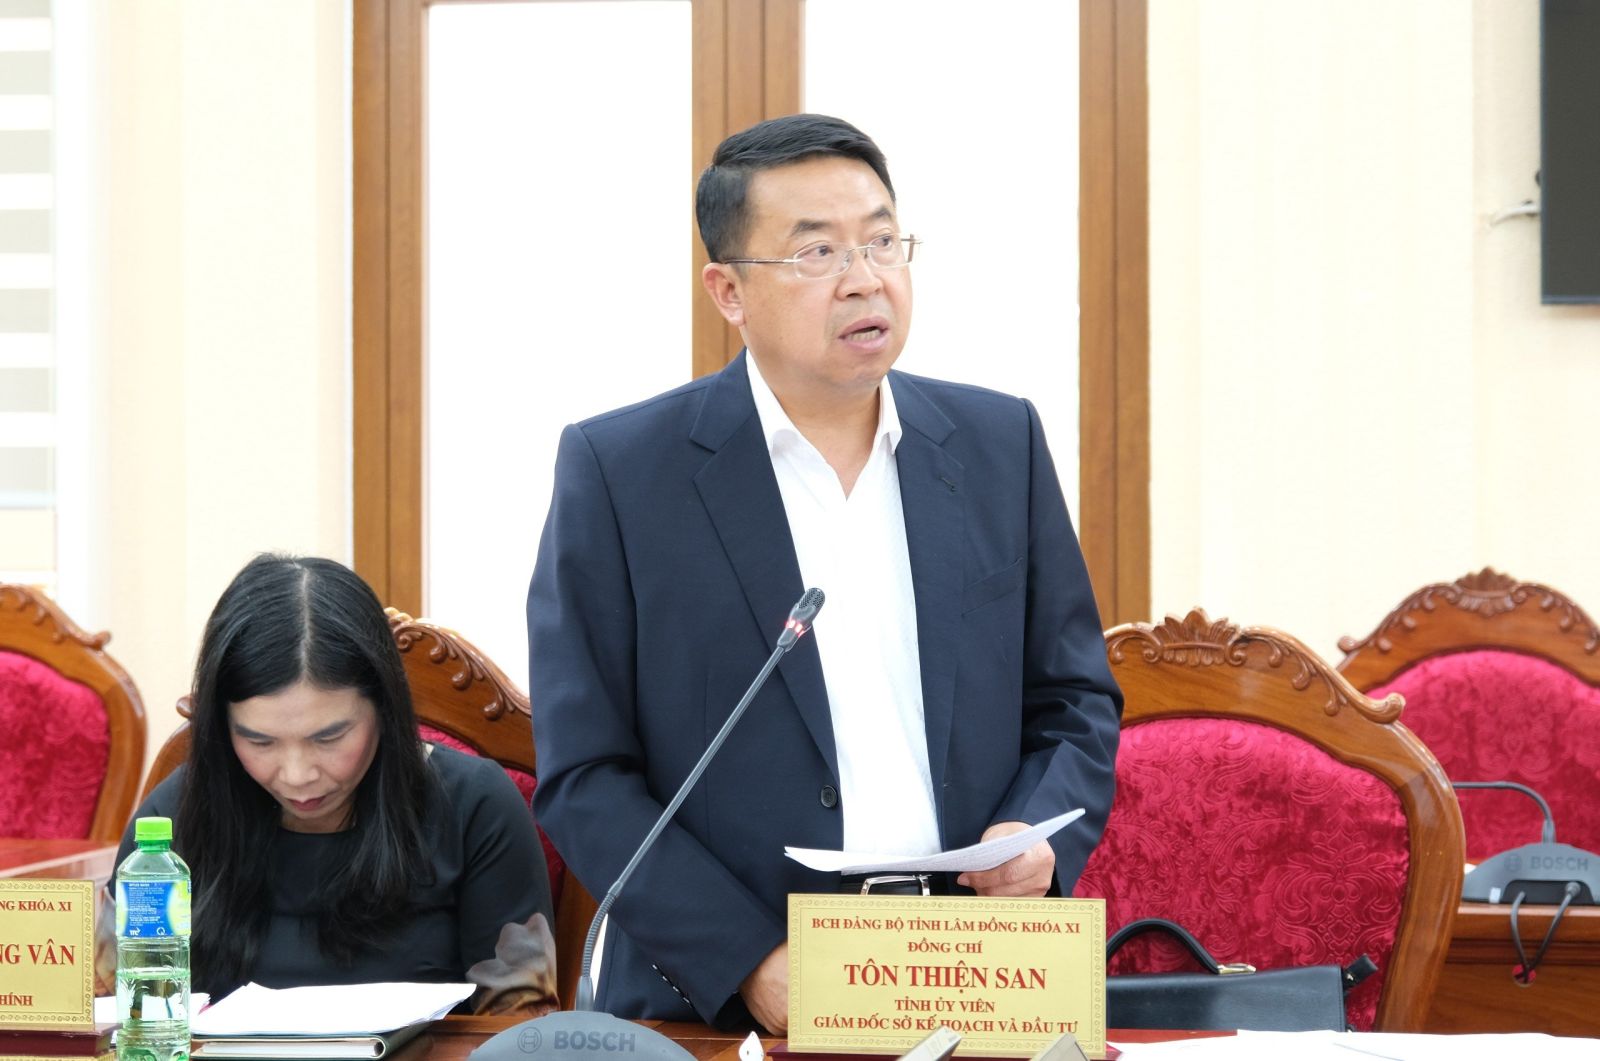 Đồng chí Tôn Thiện San - Giám đốc Sở Kế hoạch và Đầu tư tỉnh Lâm Đồng nêu ý kiến về vấn đề quy hoạch